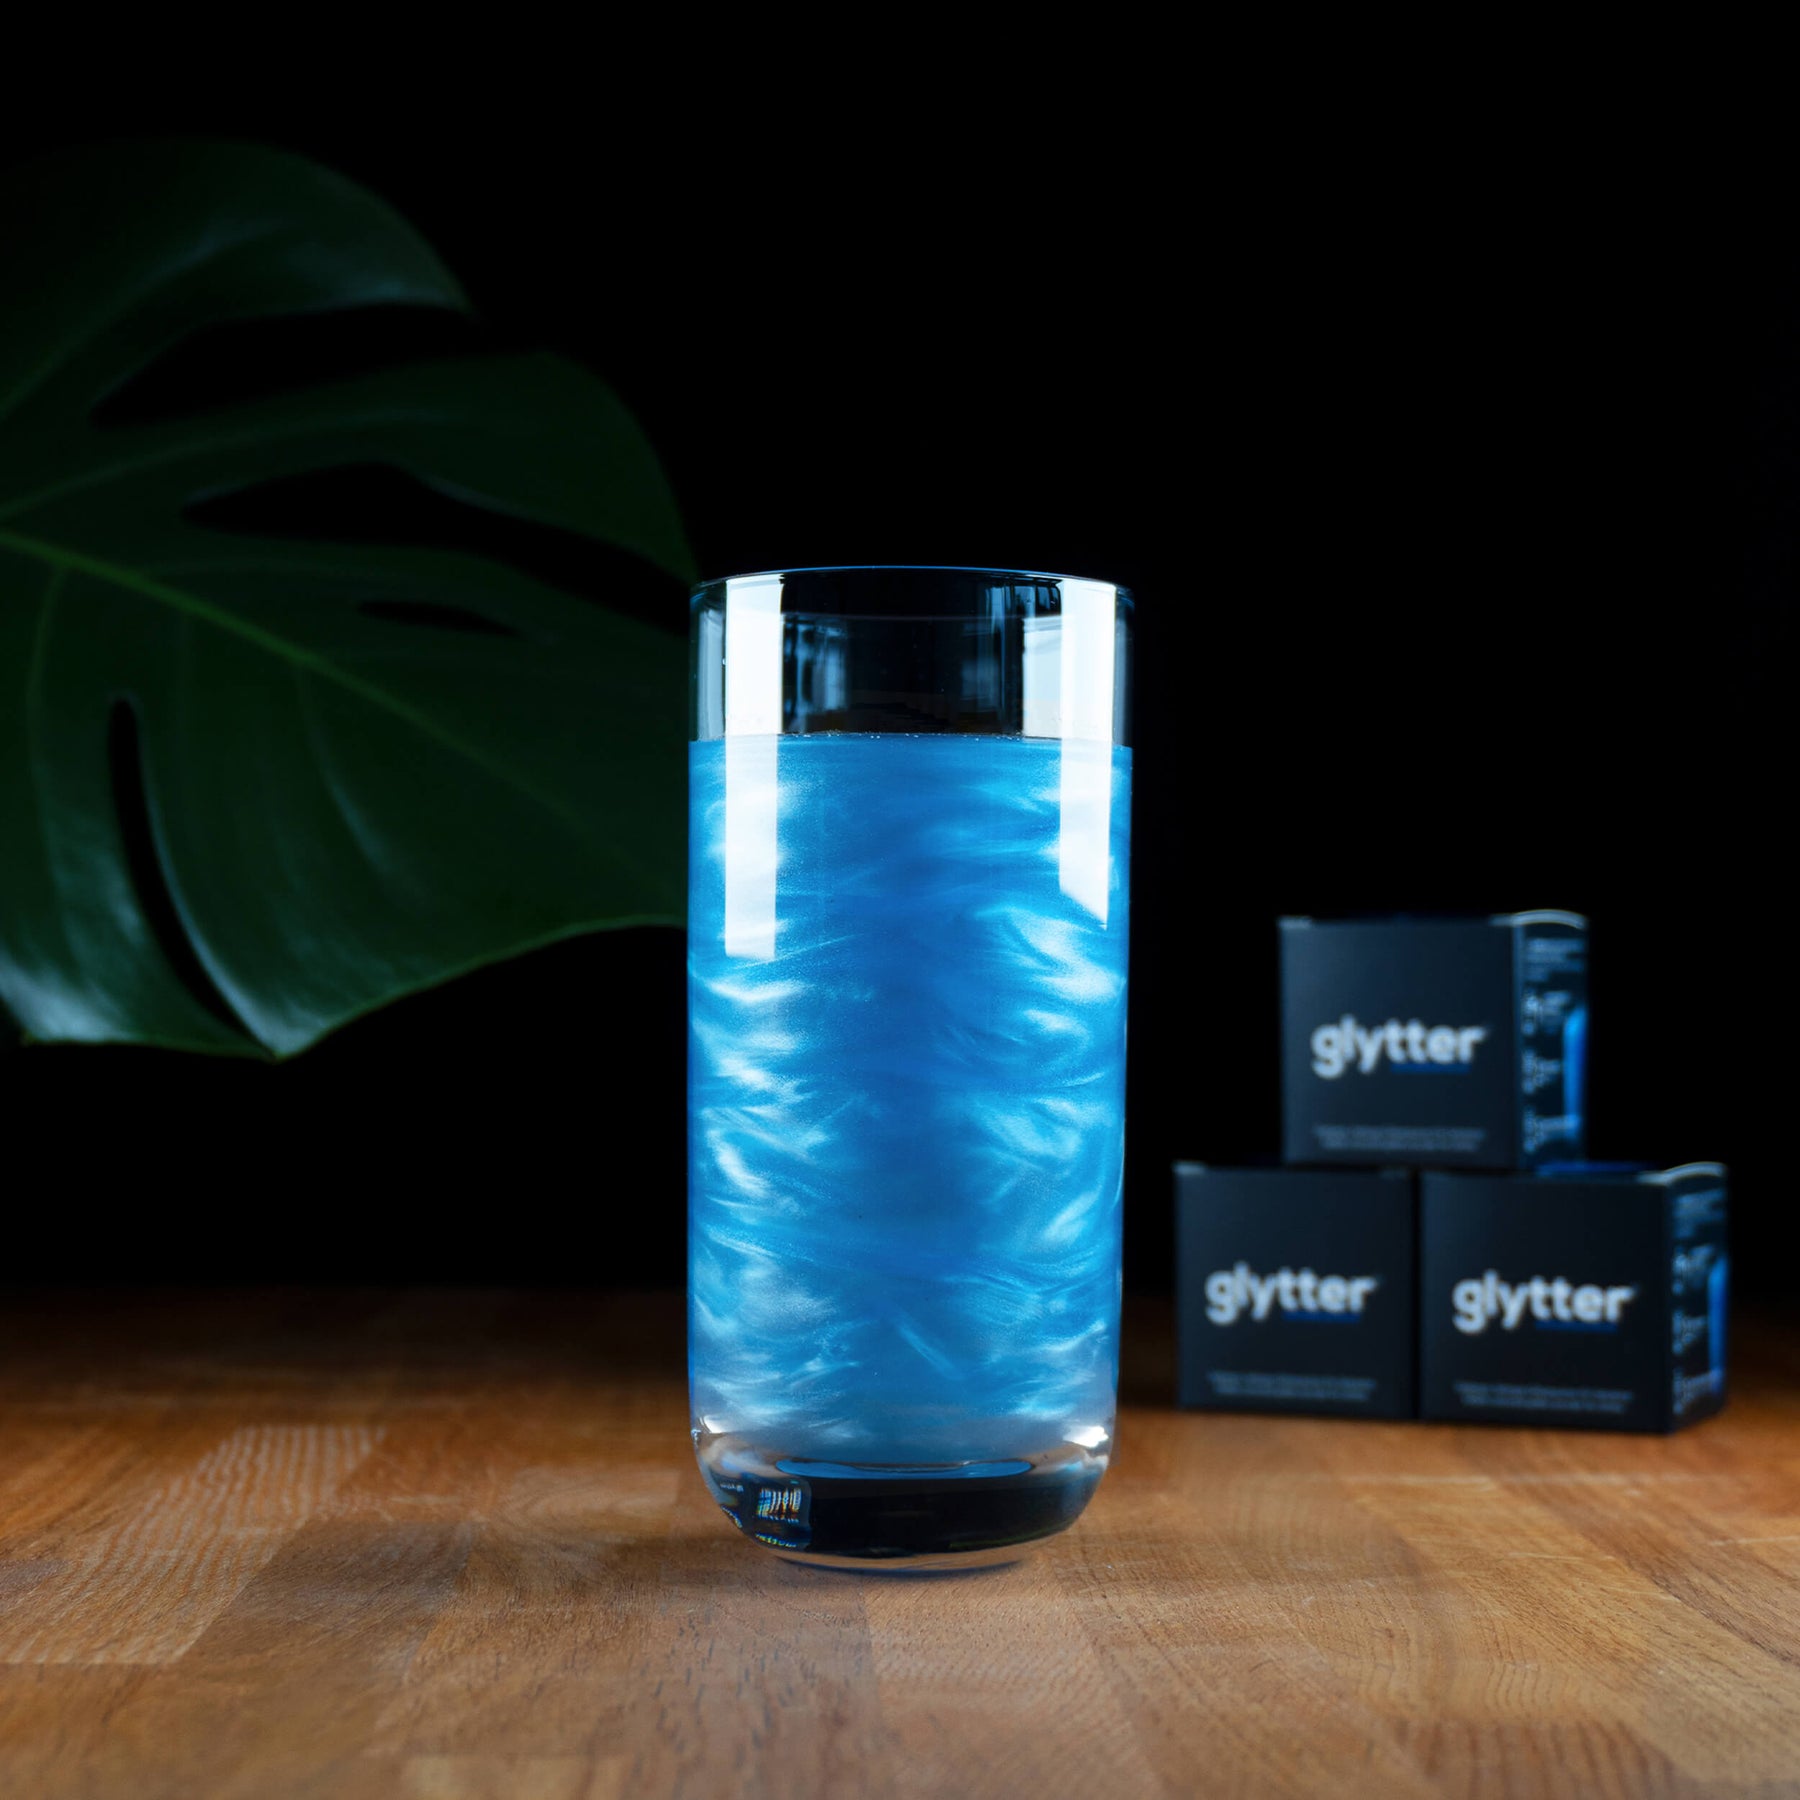 Glytterpulver - macht atemberaubenden Schimmer im Getränk - Blau (100g) - Vorteilspack